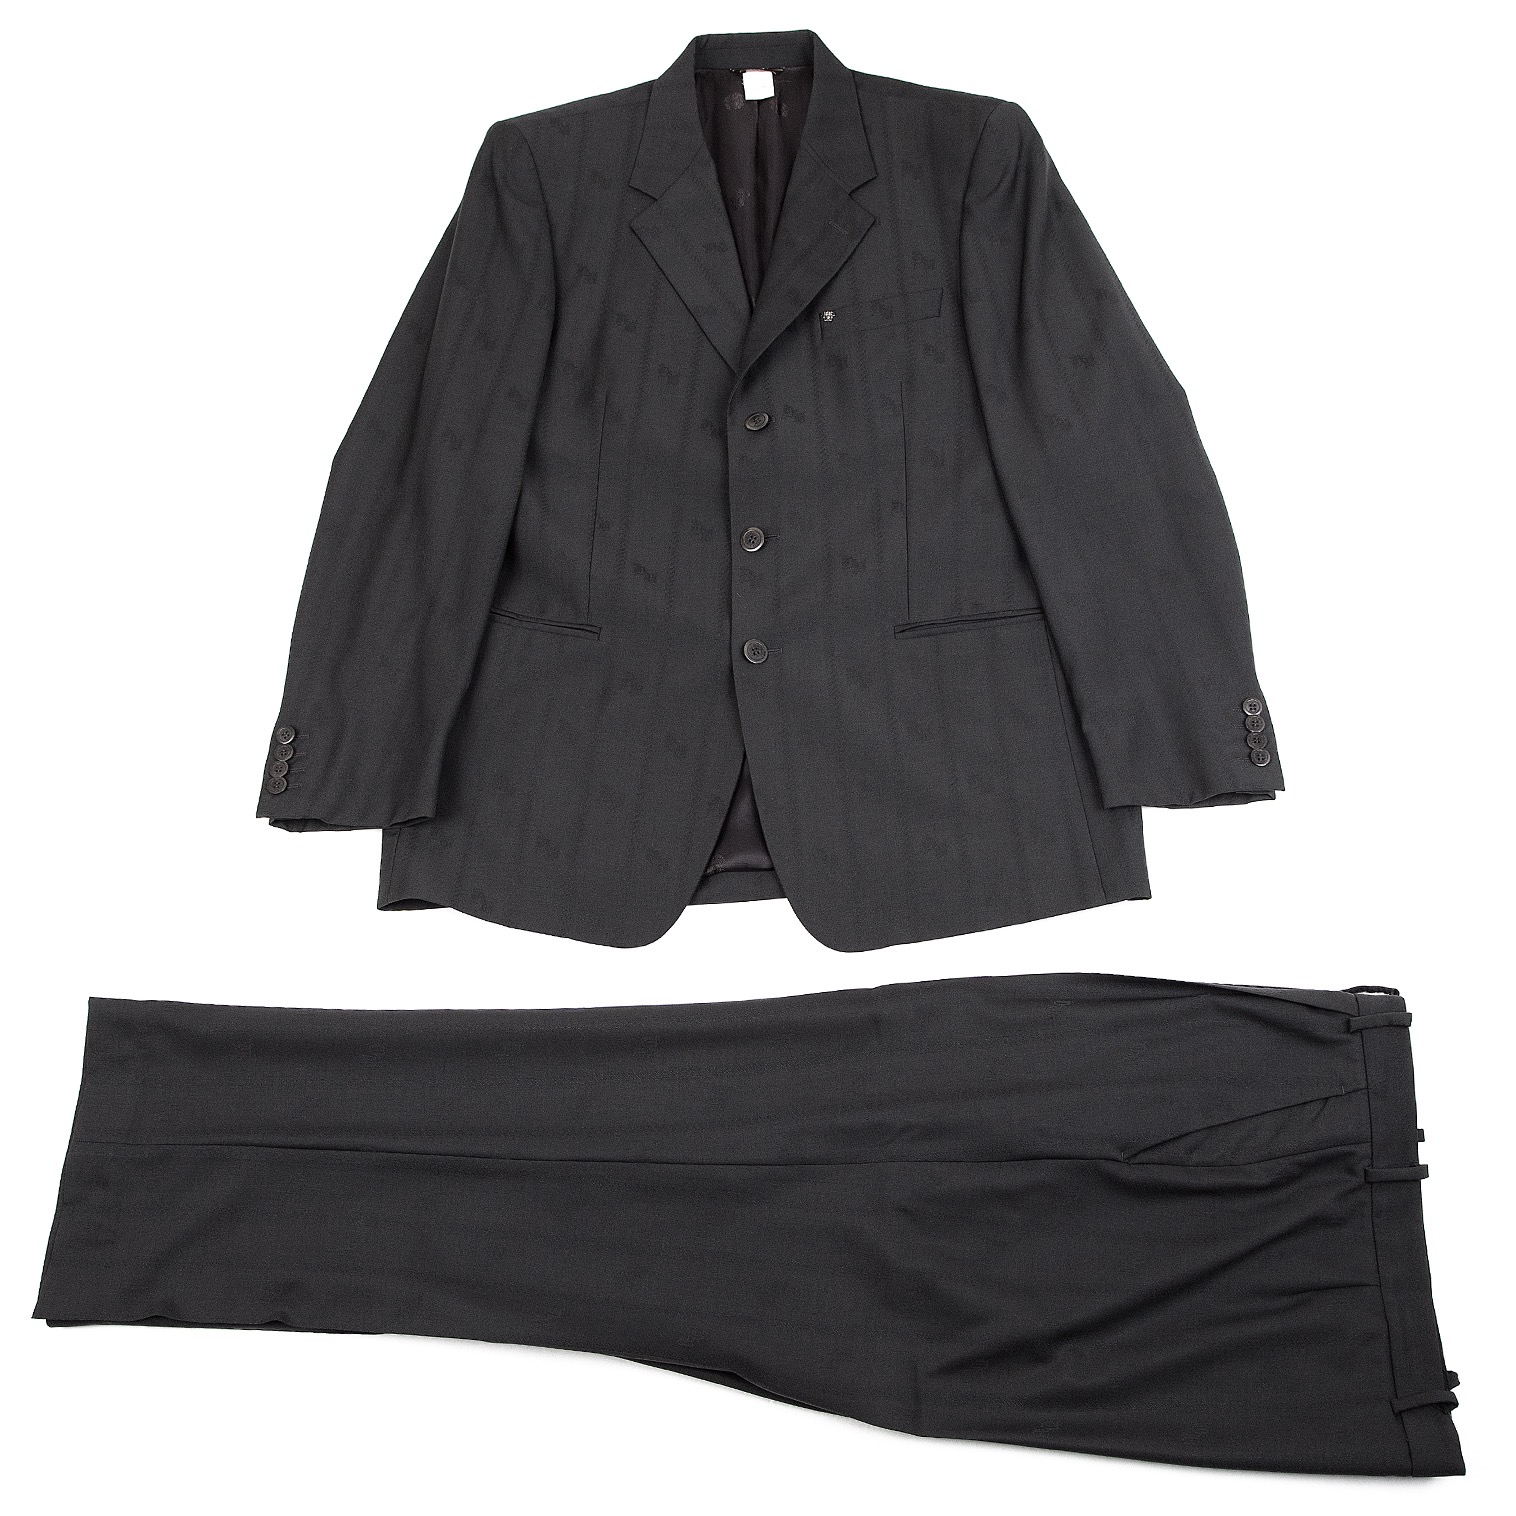 入手困難✨ ヴェルサーチ スーツ セットアップ 銀ボタン 冠婚葬祭 ブラック袖丈約62cm